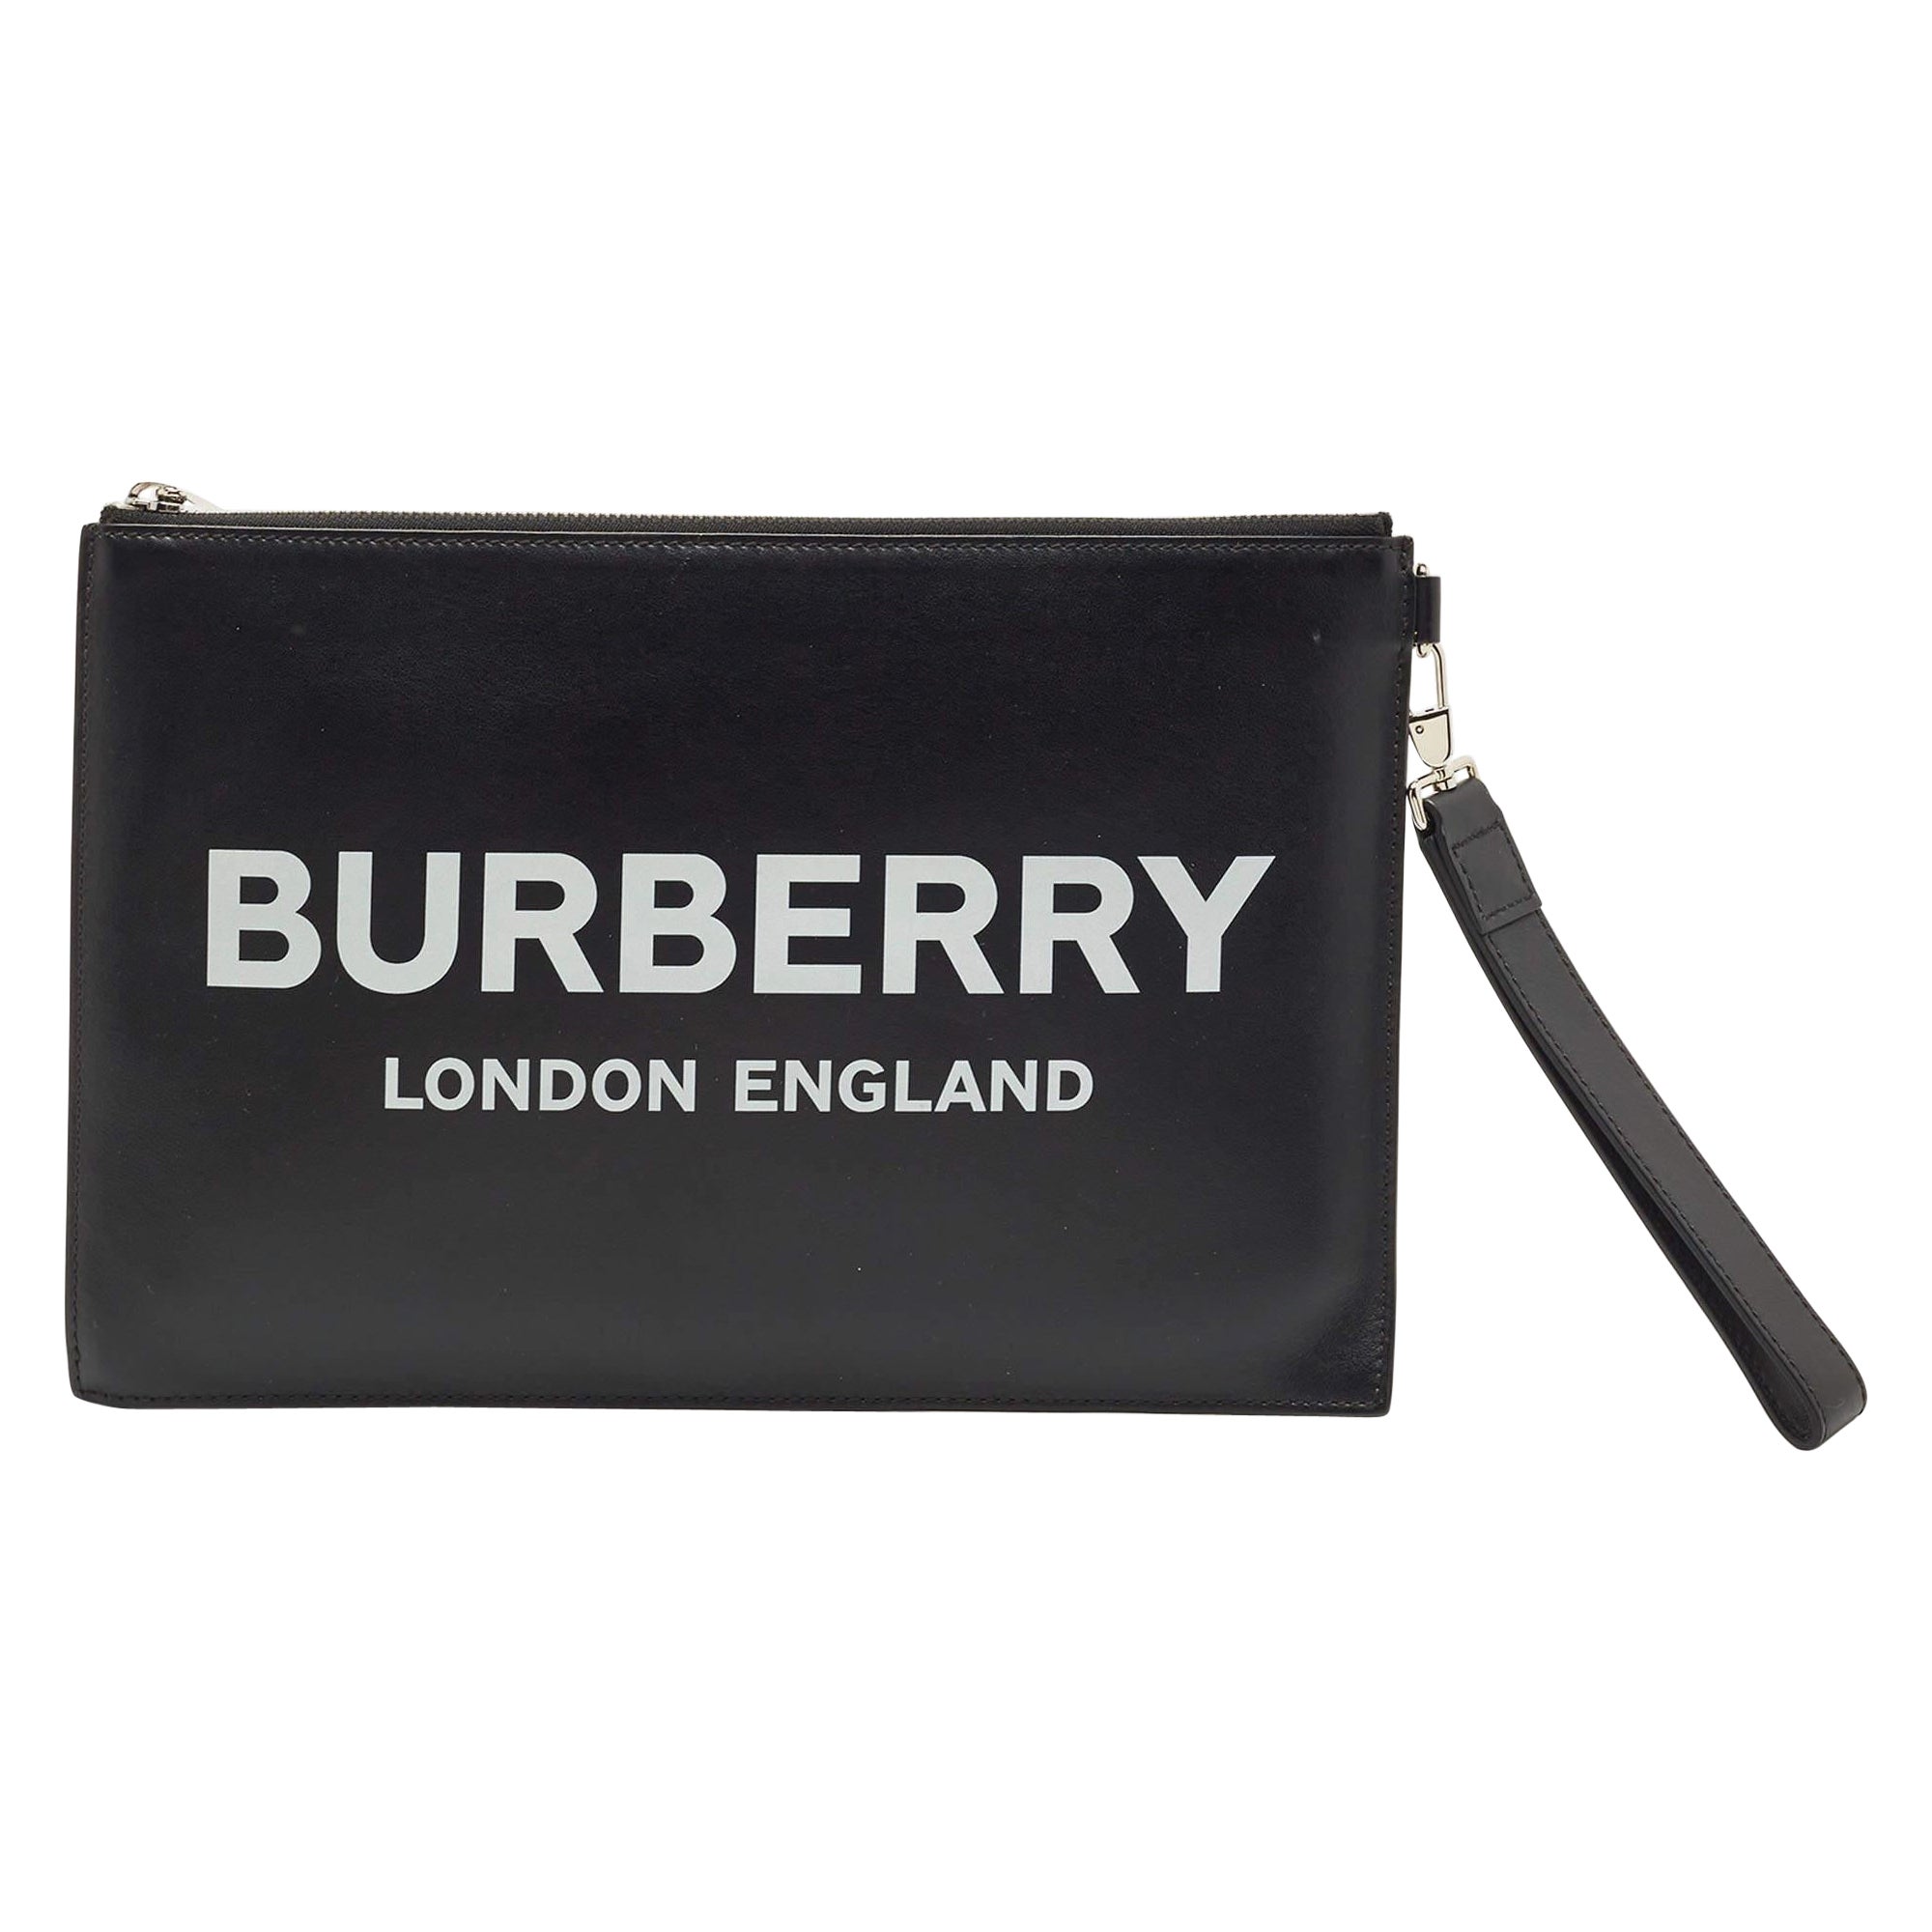 Burberrys' Double Zip Travering Bag